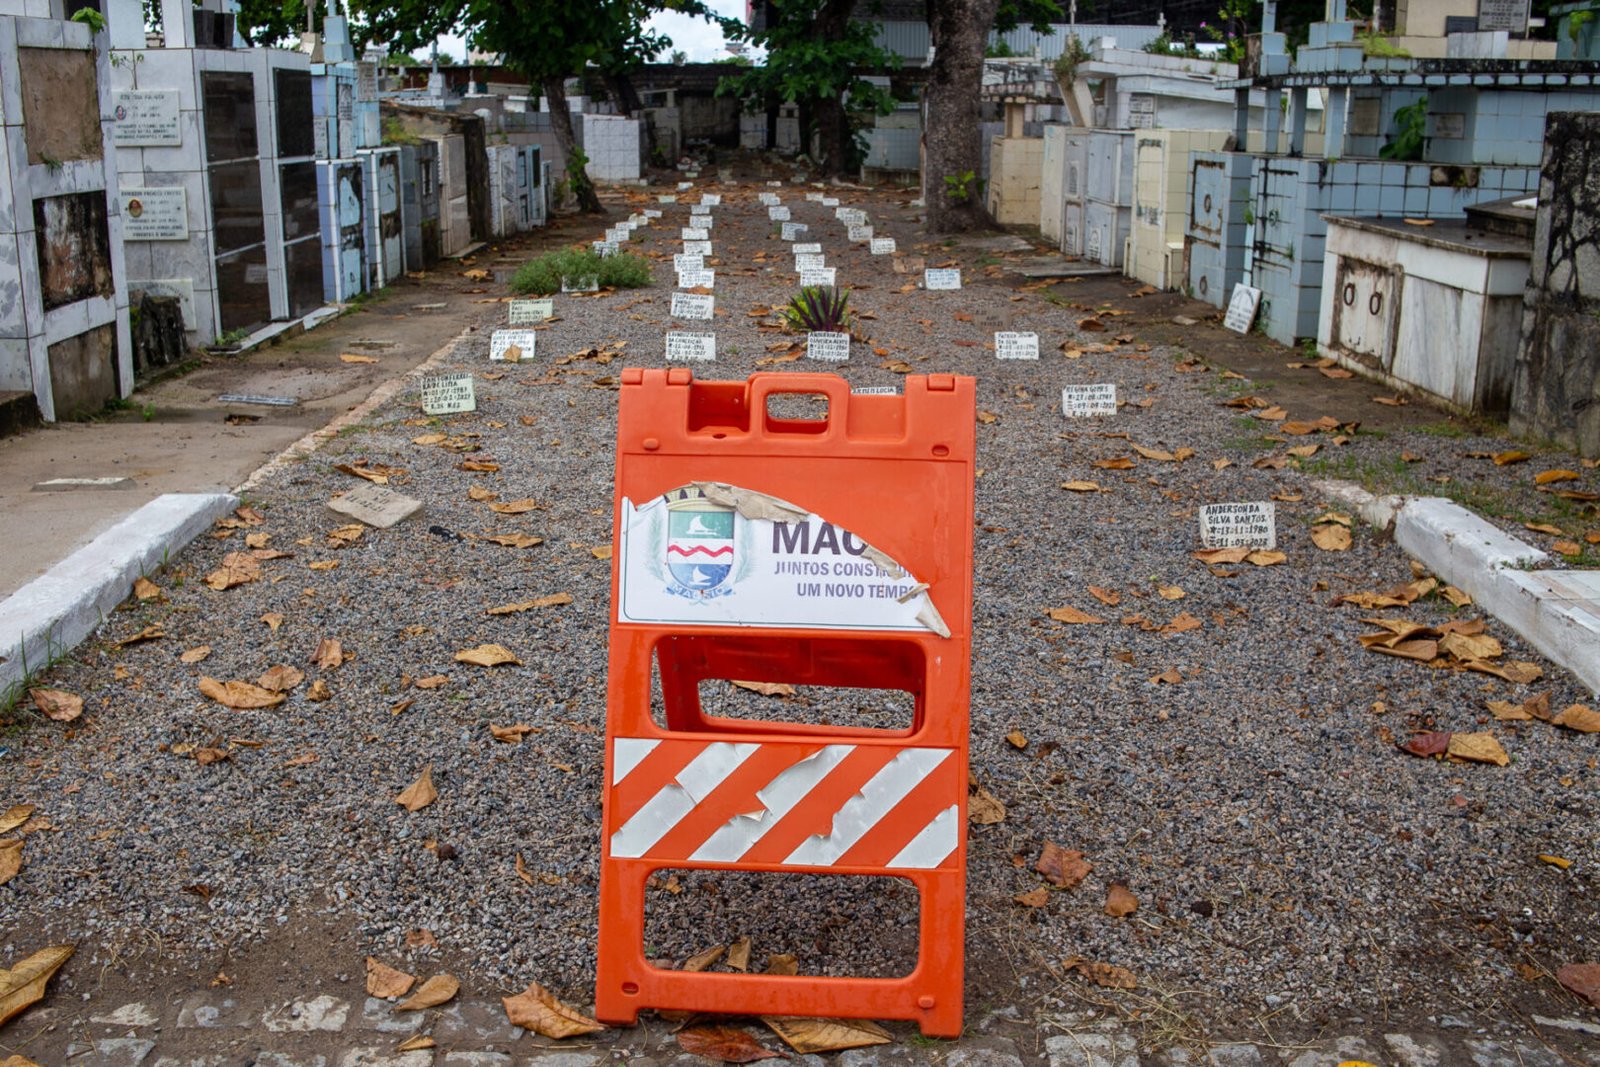 @orlandocostaportfolio Cemiterios 44 scaled - Sem vagas, cemitérios de Maceió enterram 80% dos mortos em cova rasa 